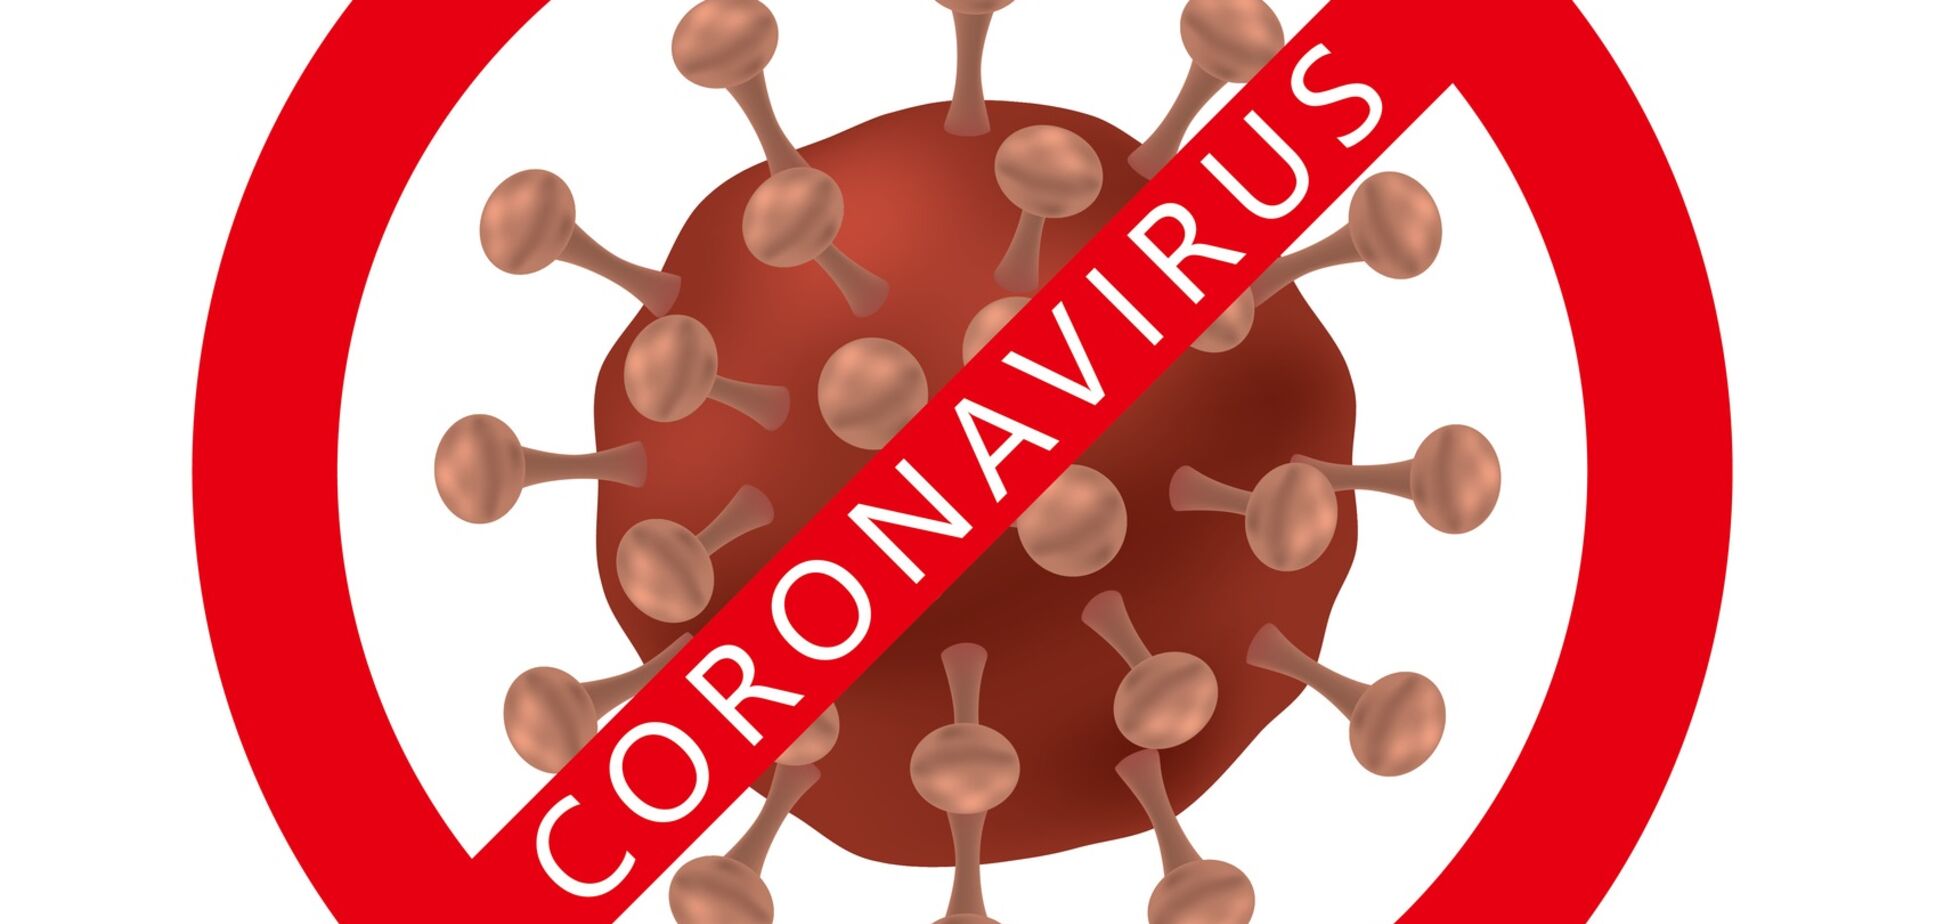 РосСМИ массово лгут о коронавирусе: Гудков разнес выдумки пропаганды